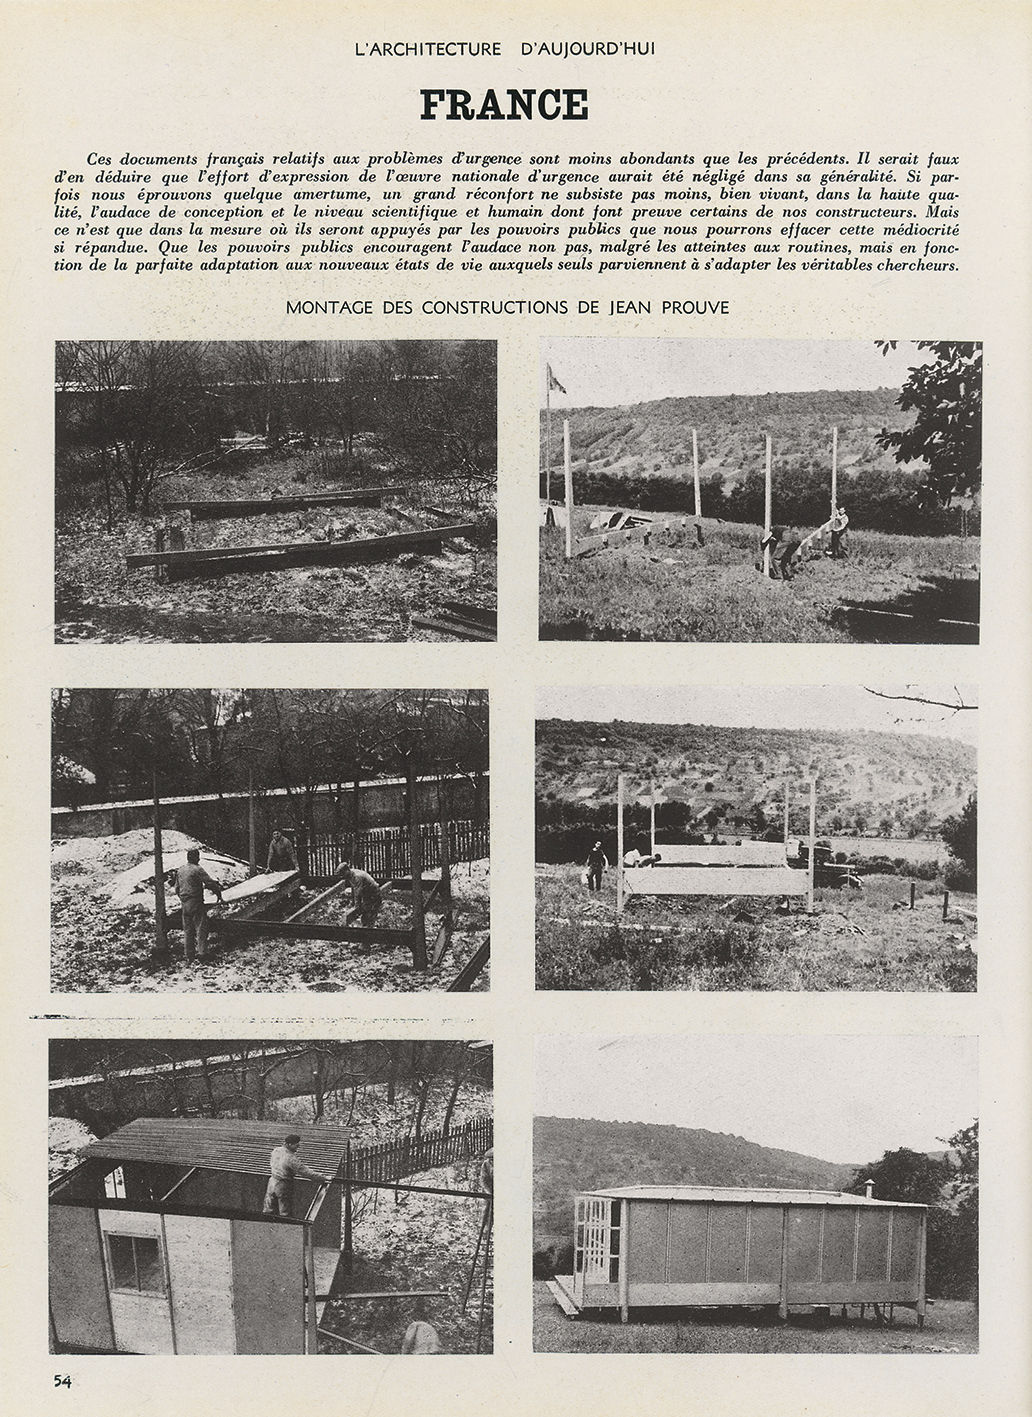 « Solution d’urgence. Montage des constructions de Jean Prouvé » <i>L’Architecture d’aujourd’hui,</i> n° 2, juillet-août 1945.